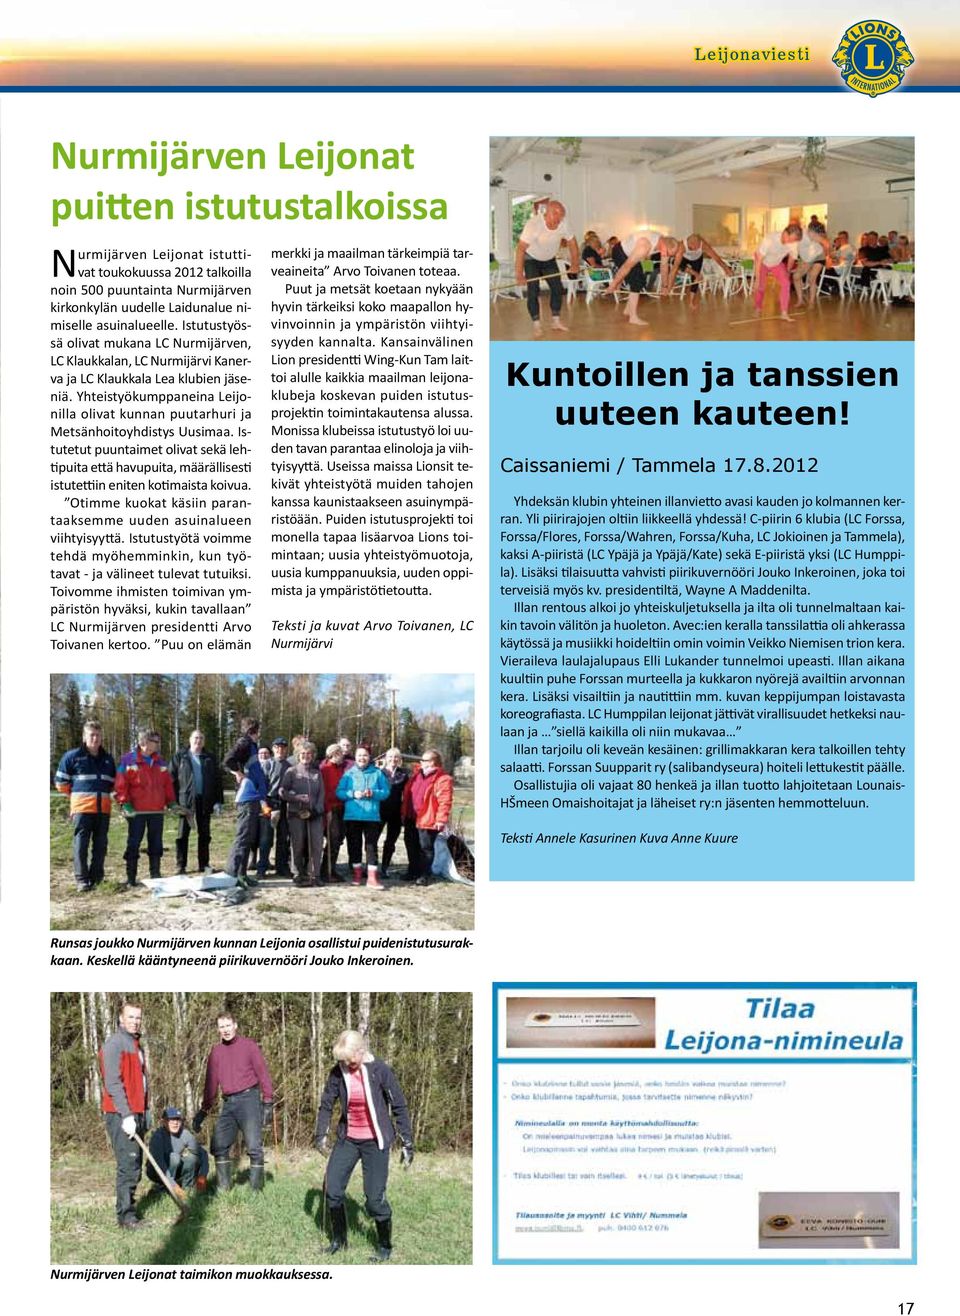 Yhteistyökumppaneina Leijonilla olivat kunnan puutarhuri ja Metsänhoitoyhdistys Uusimaa. Istutetut puuntaimet olivat sekä lehtipuita että havupuita, määrällisesti istutettiin eniten kotimaista koivua.